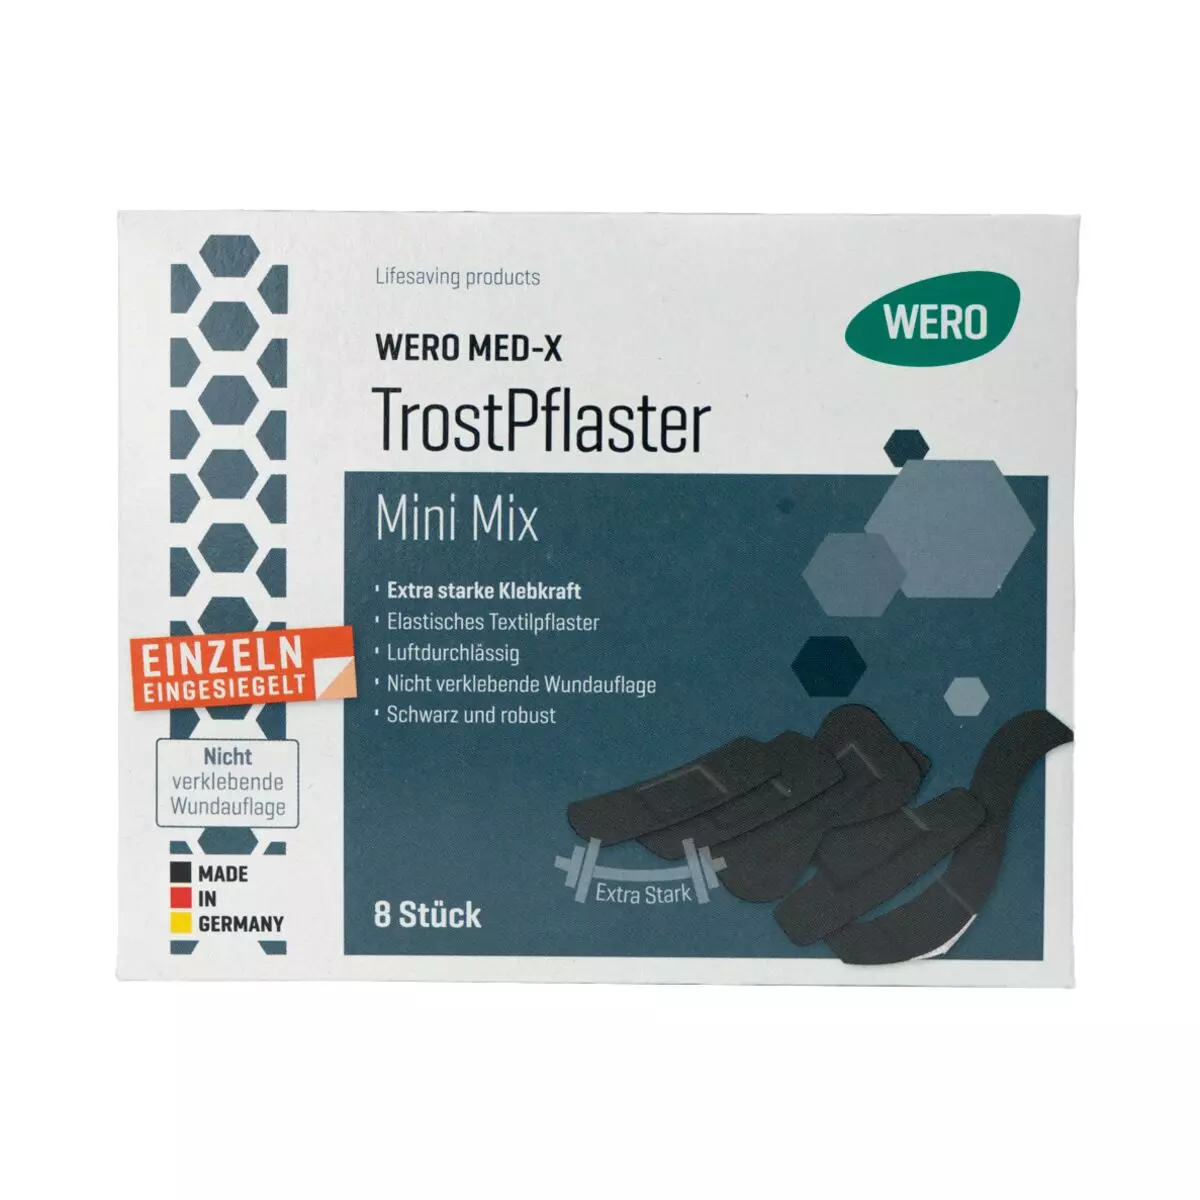 WERO MED-X® TrostPflaster Mini Mix